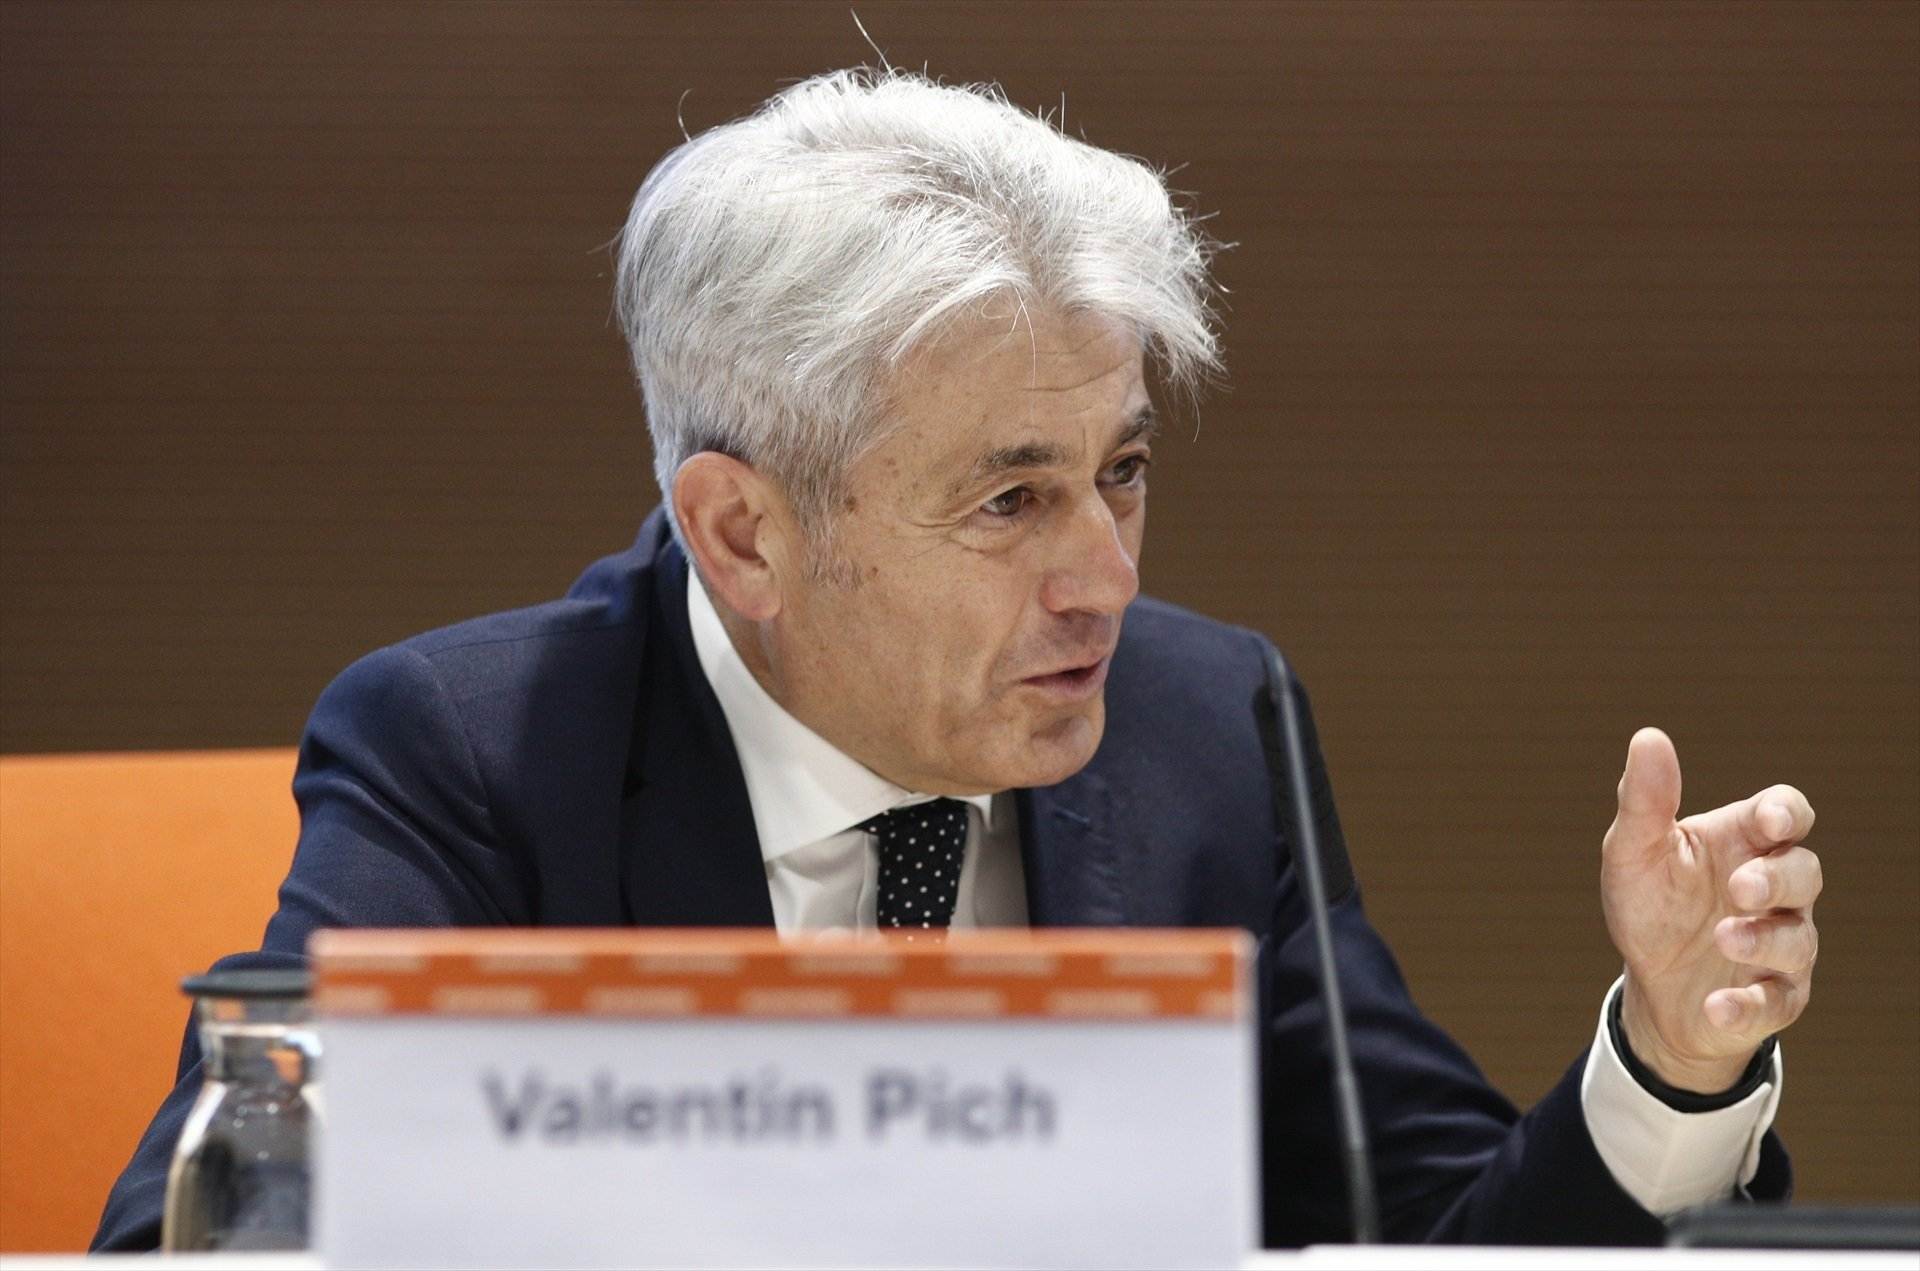 El presidente del Consejo General de Economistas de España Valentín Pich / EP